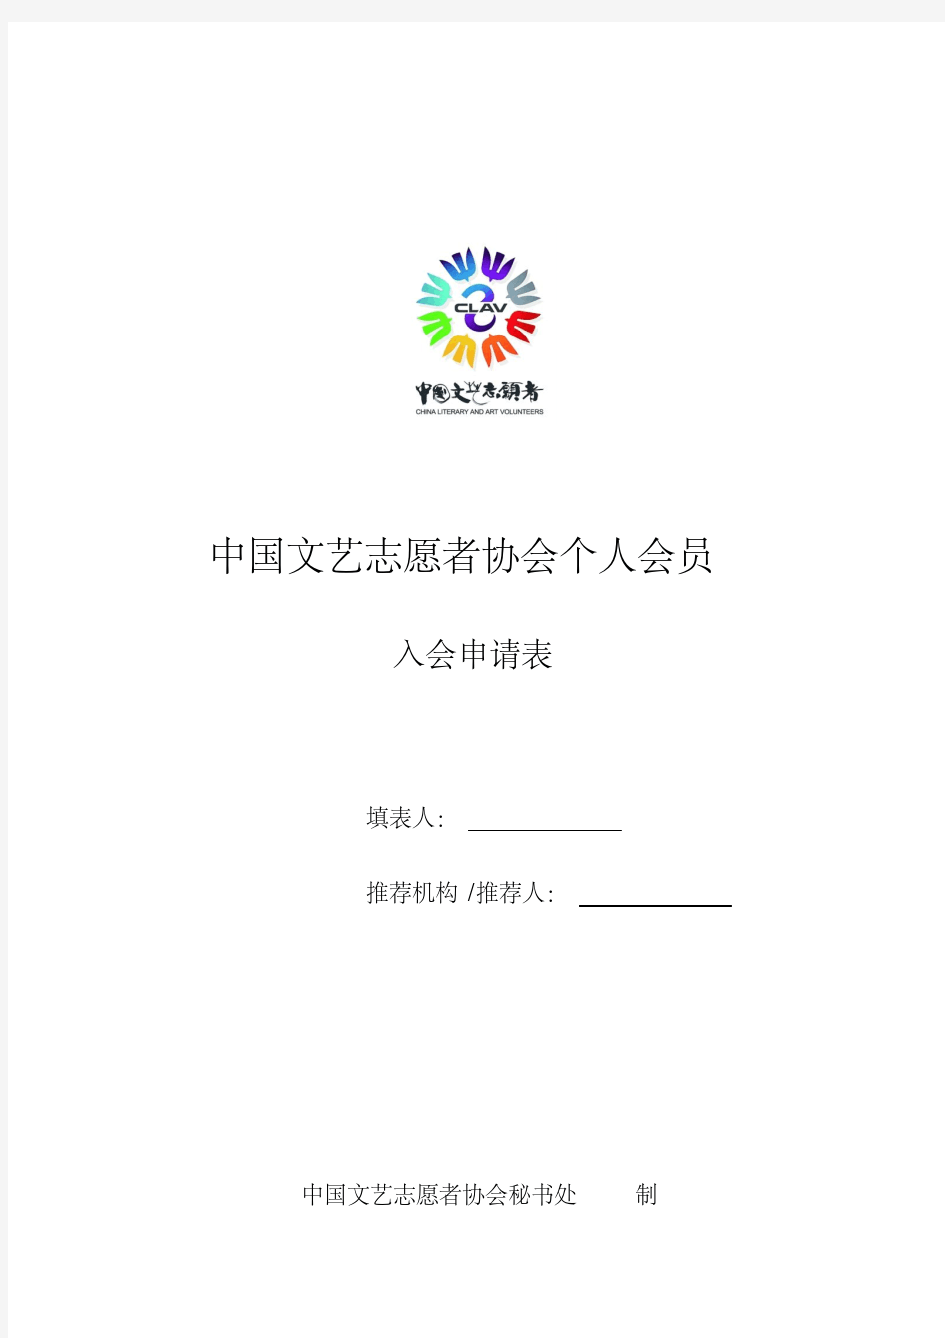 中国文艺志愿者协会个人会员入会申请表